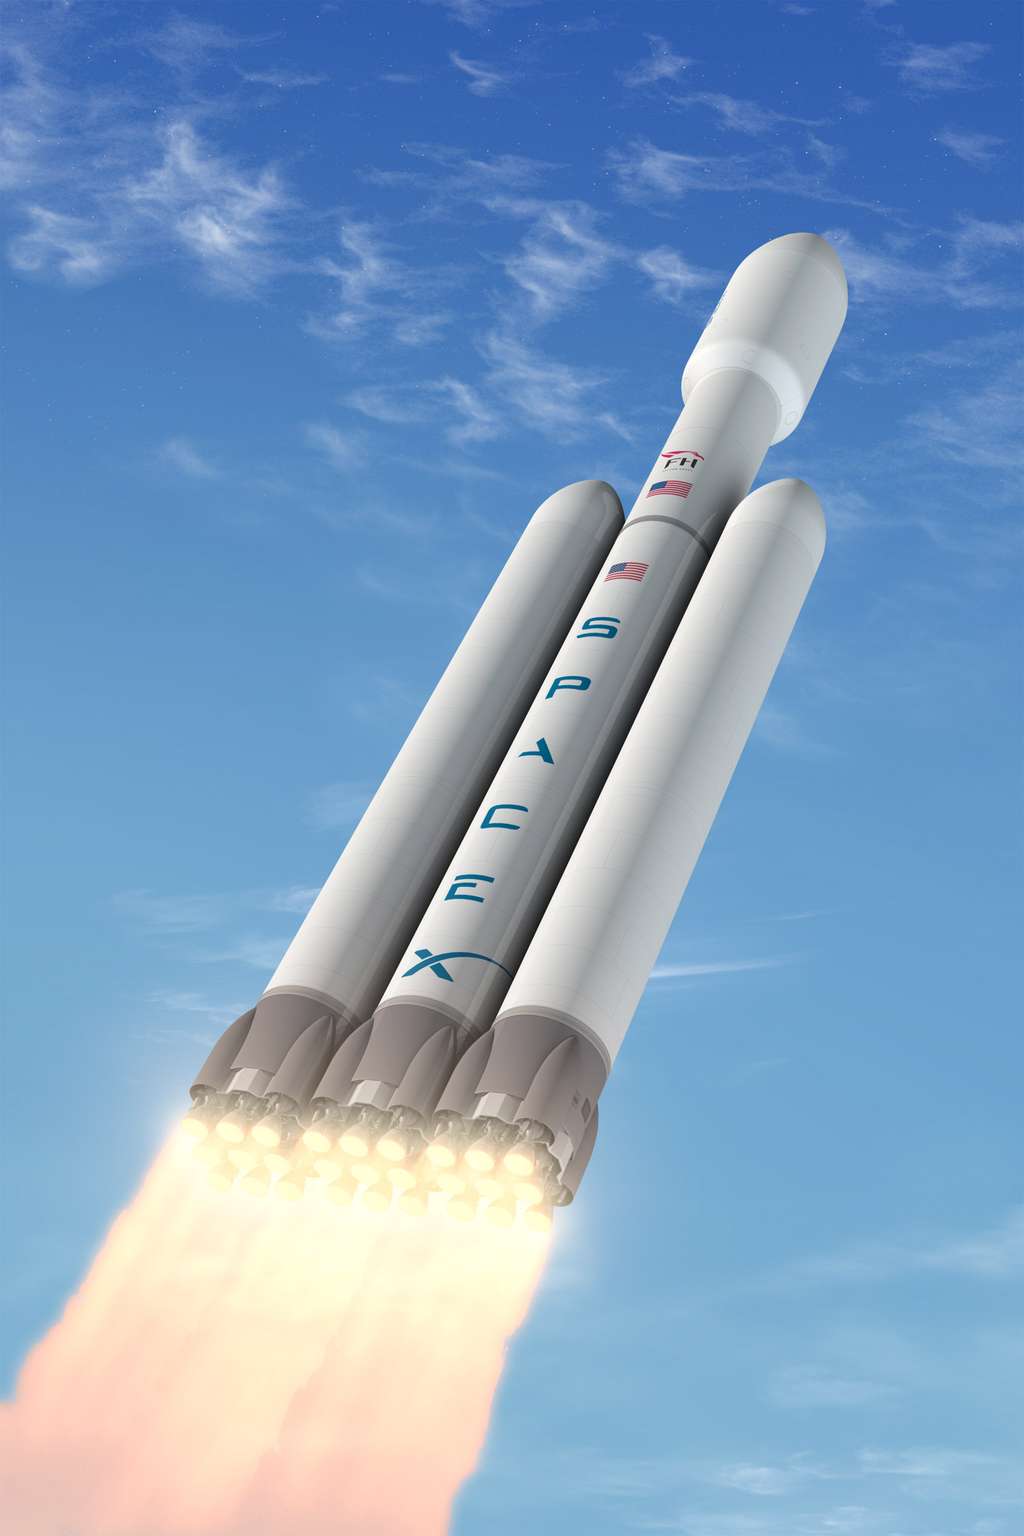 Dévoilé il y a quelques jours, le lanceur Falcon Heavy de SpaceX pourrait se voir confier des missions martiennes. © SpaceX